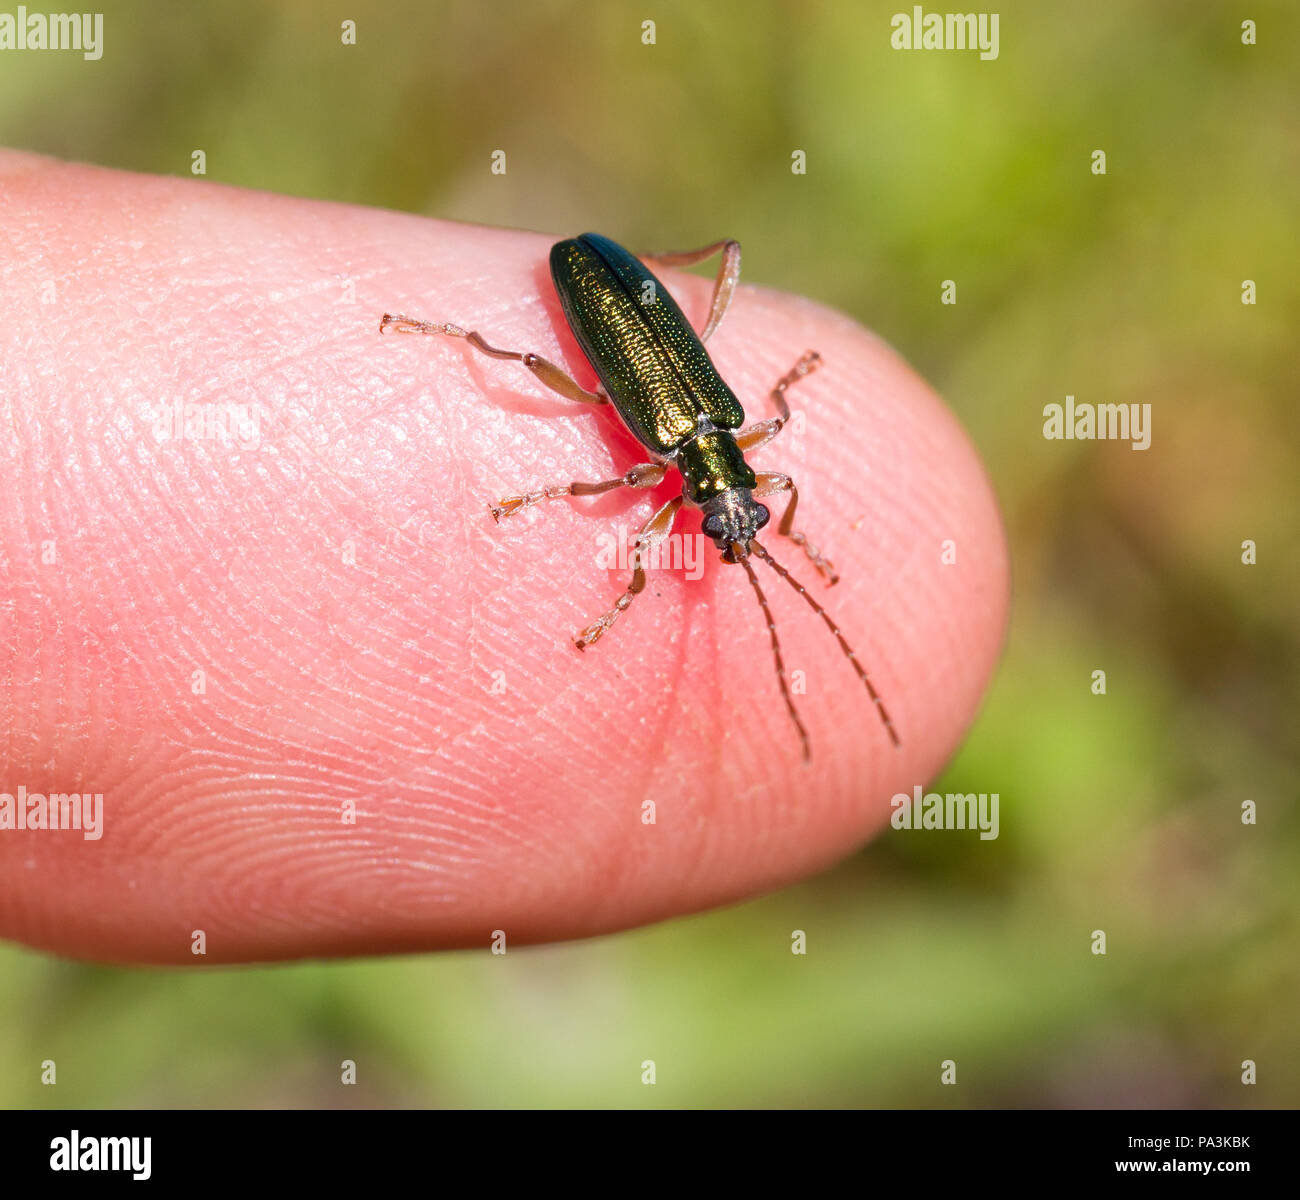 Petit bug assis sur un doigt, selective focus Banque D'Images